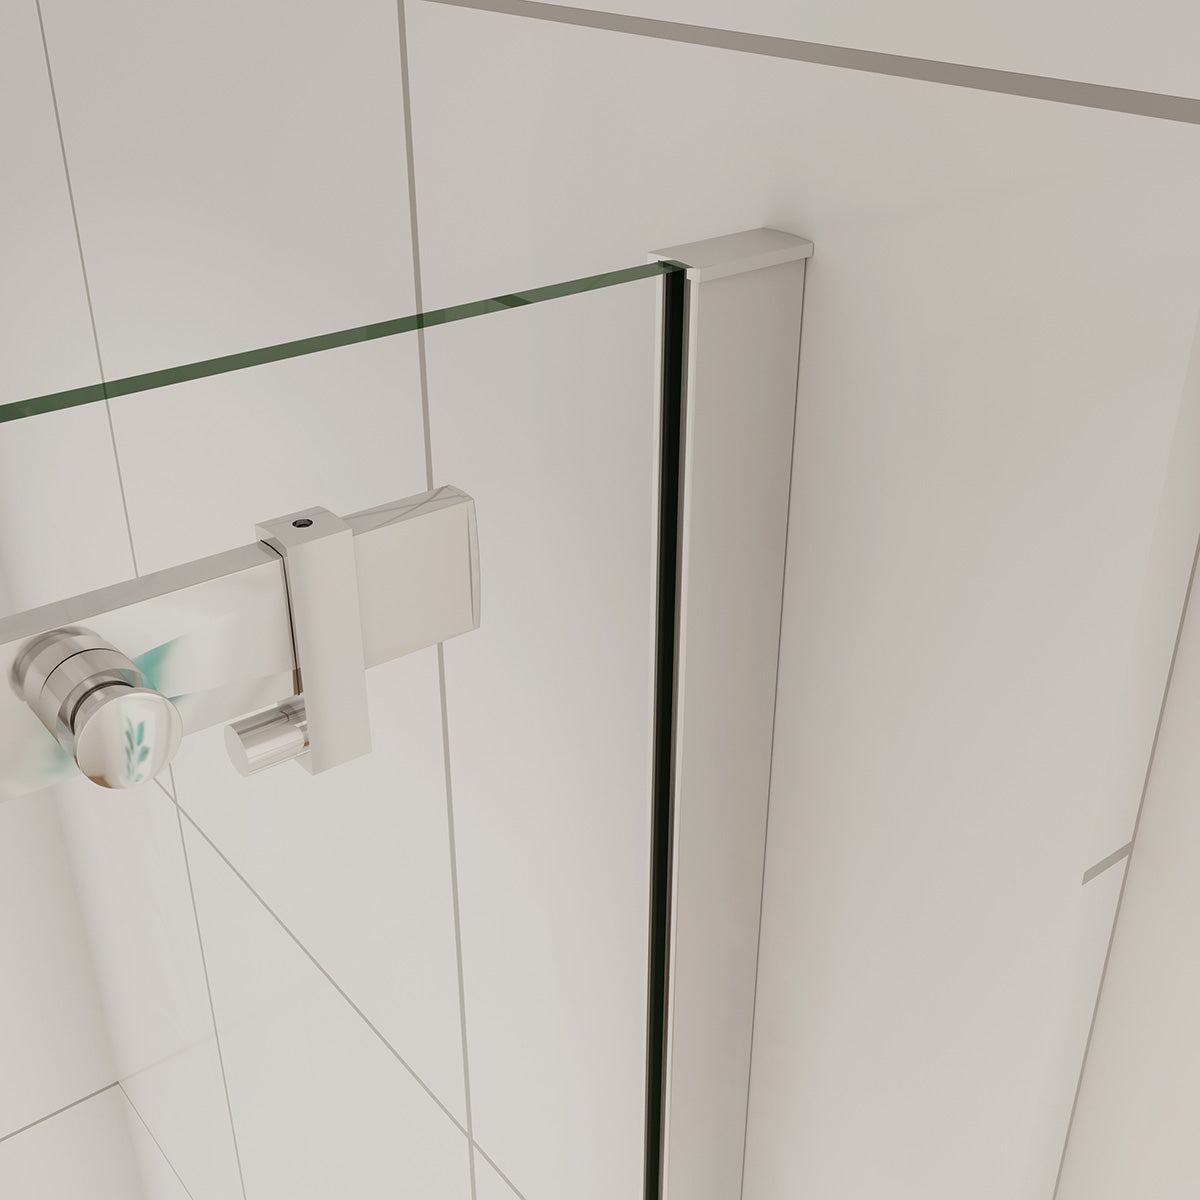 Duschtür+Seitenwand Schiebetür 160x90 cm Glasstärke 6mm Dusche Duschabtrennung Duschkabine